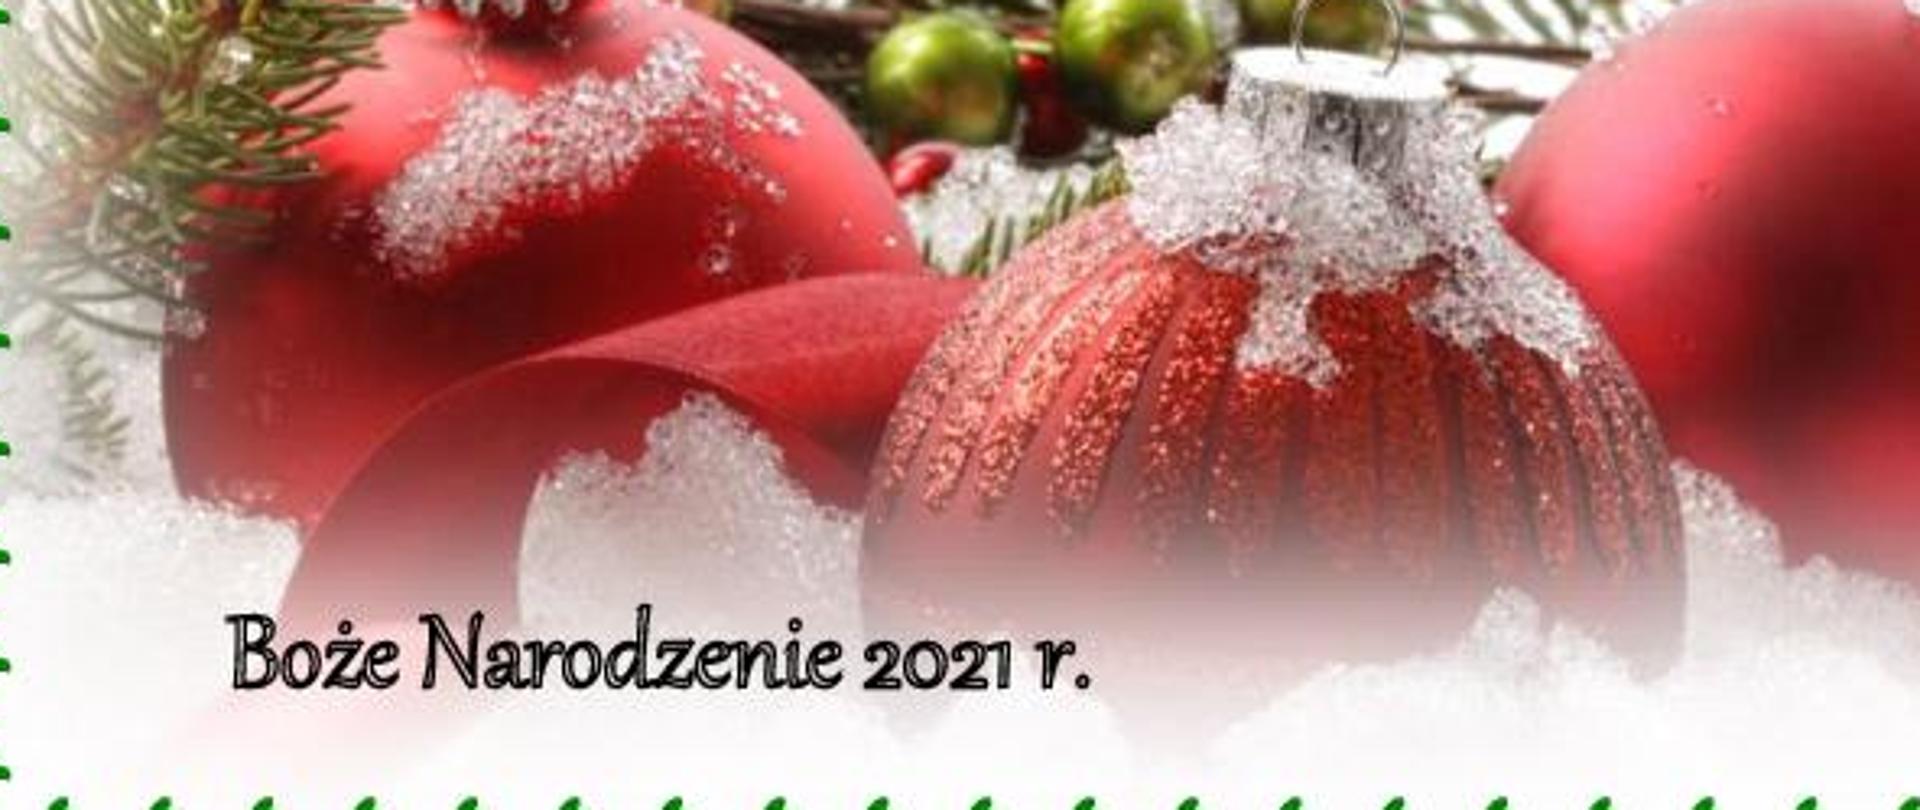 Komenda Powiatowa PSP w Inowrocławiu życzenia Boże Narodzenie 2021